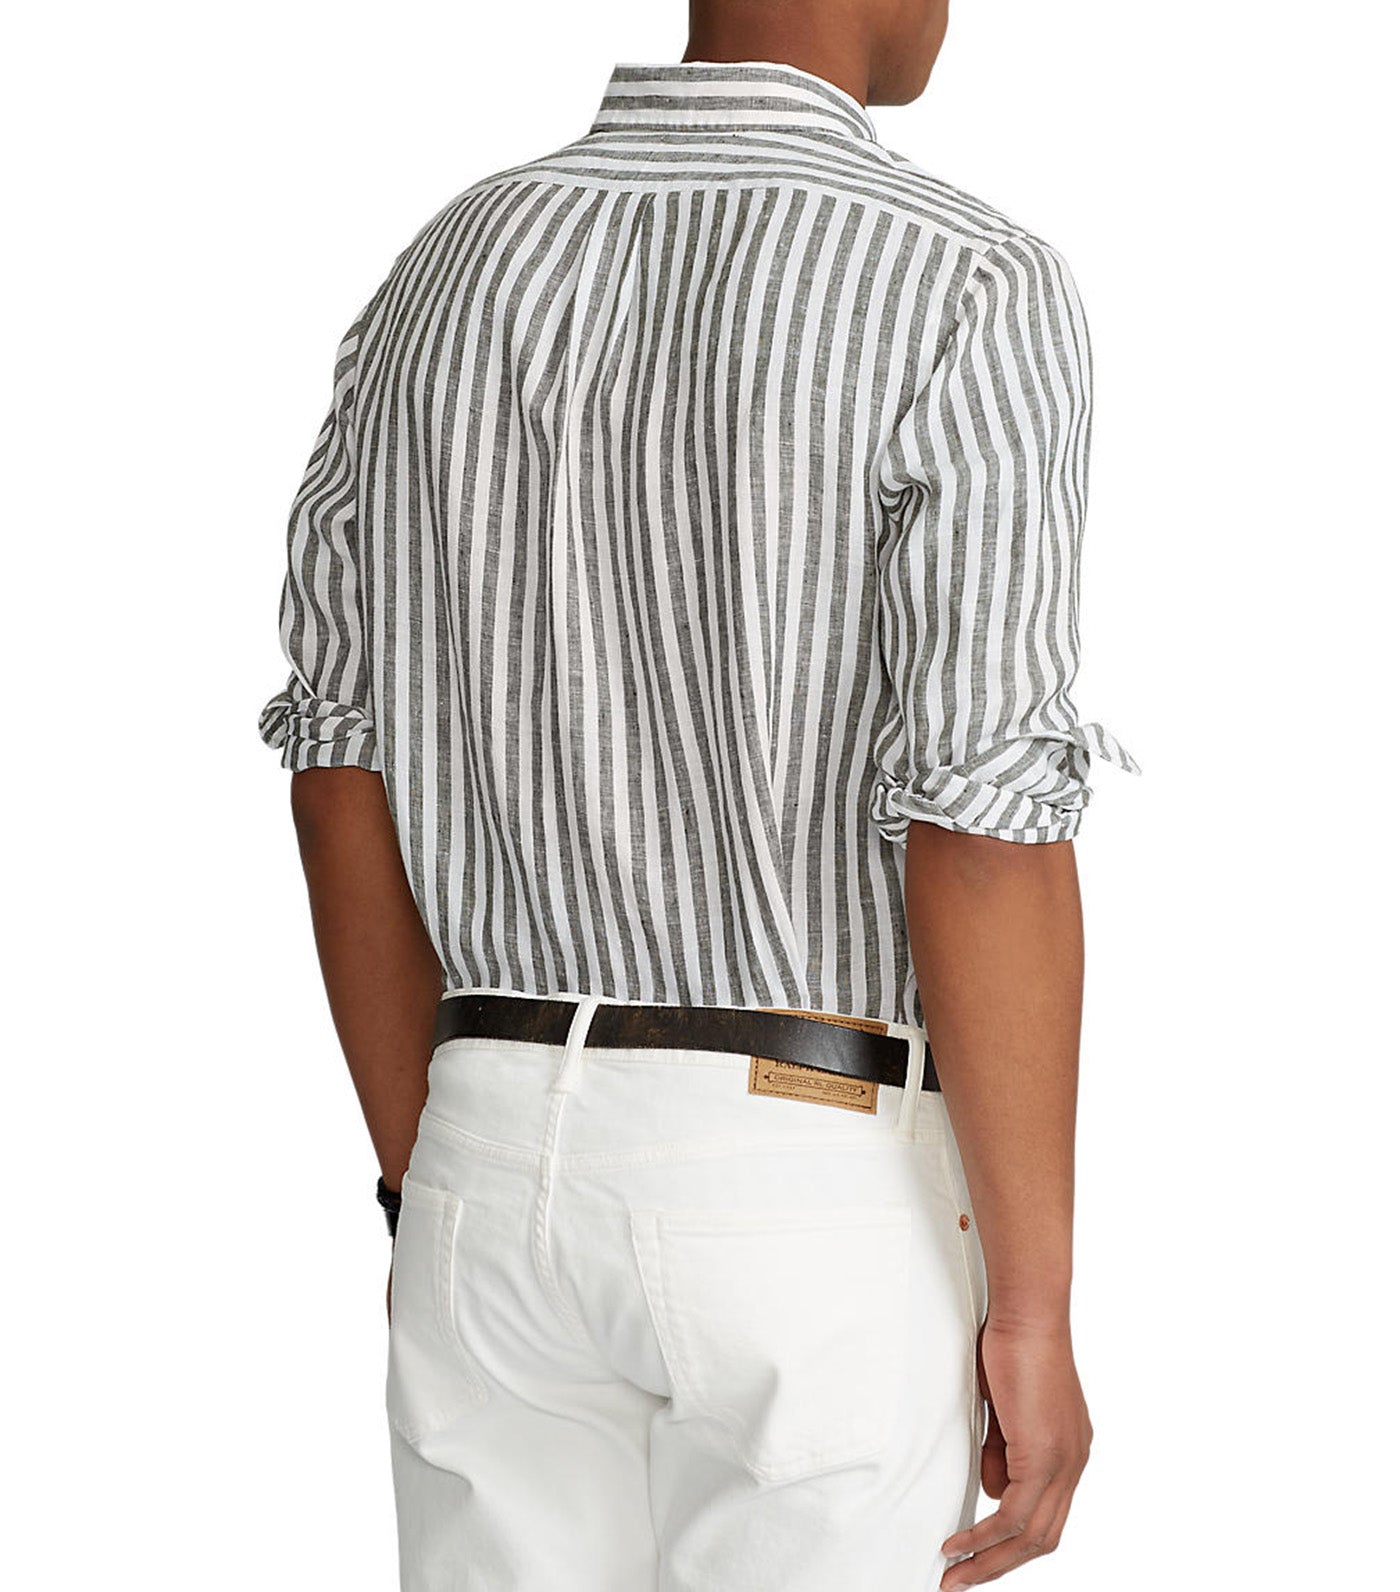 Men's Custom Fit Striped Linen Shirt Olive/White